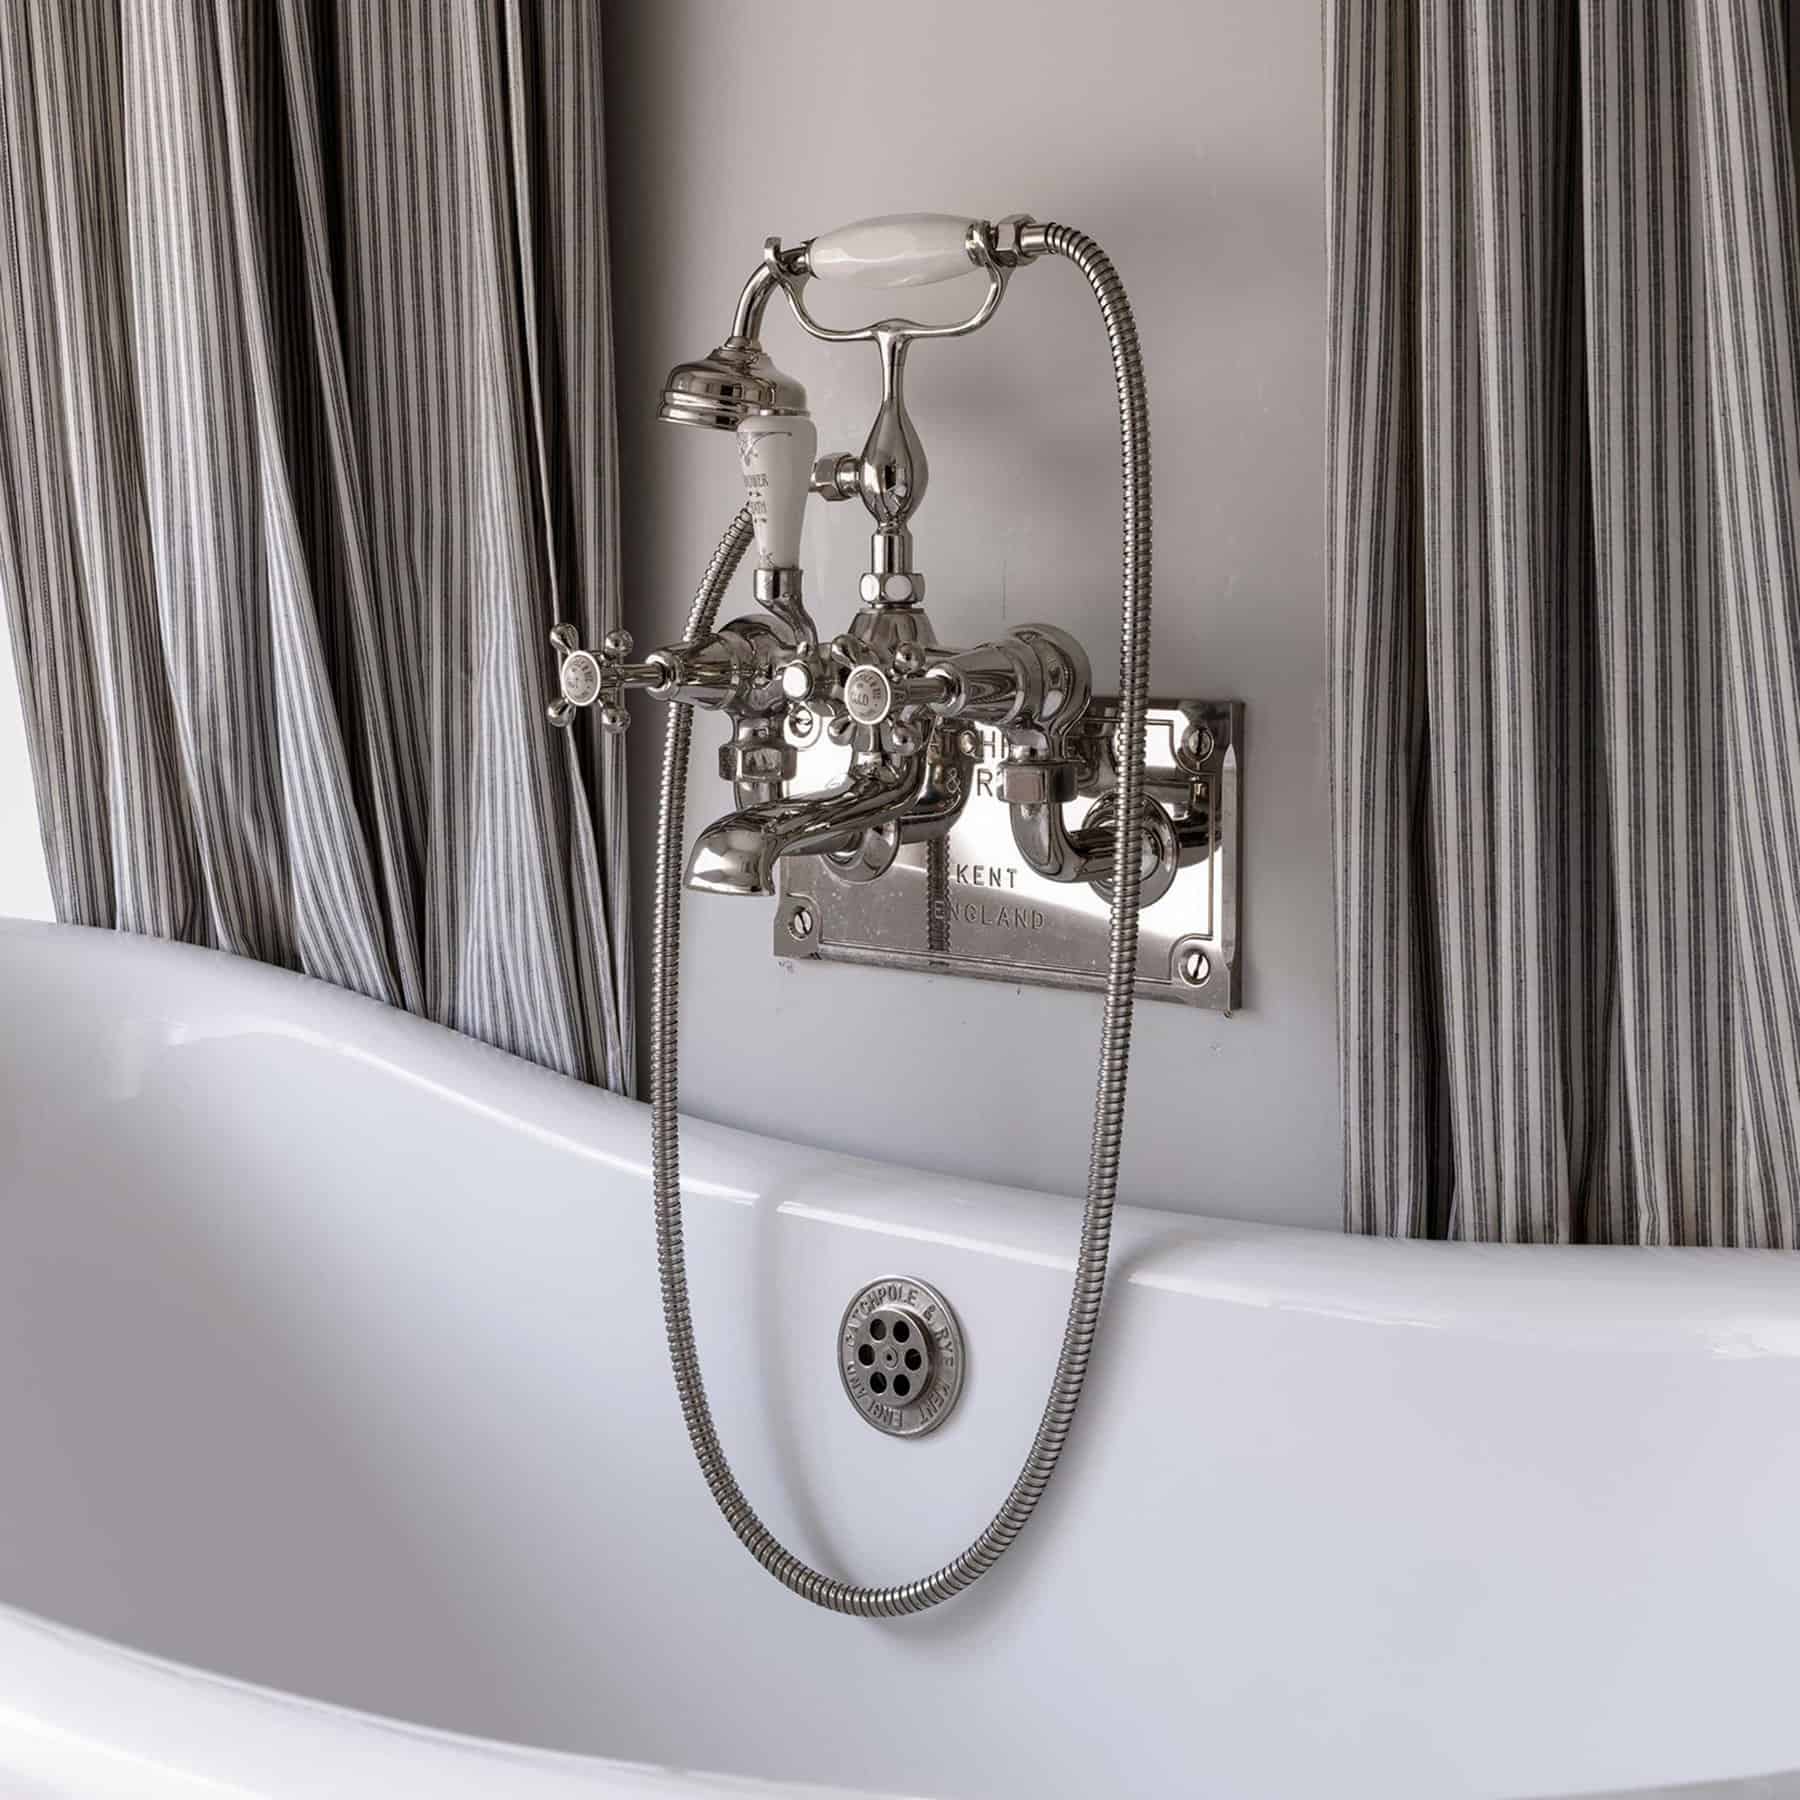 Luxury Bathroom Taps, Shower Heads & Kitchen Mixer Taps